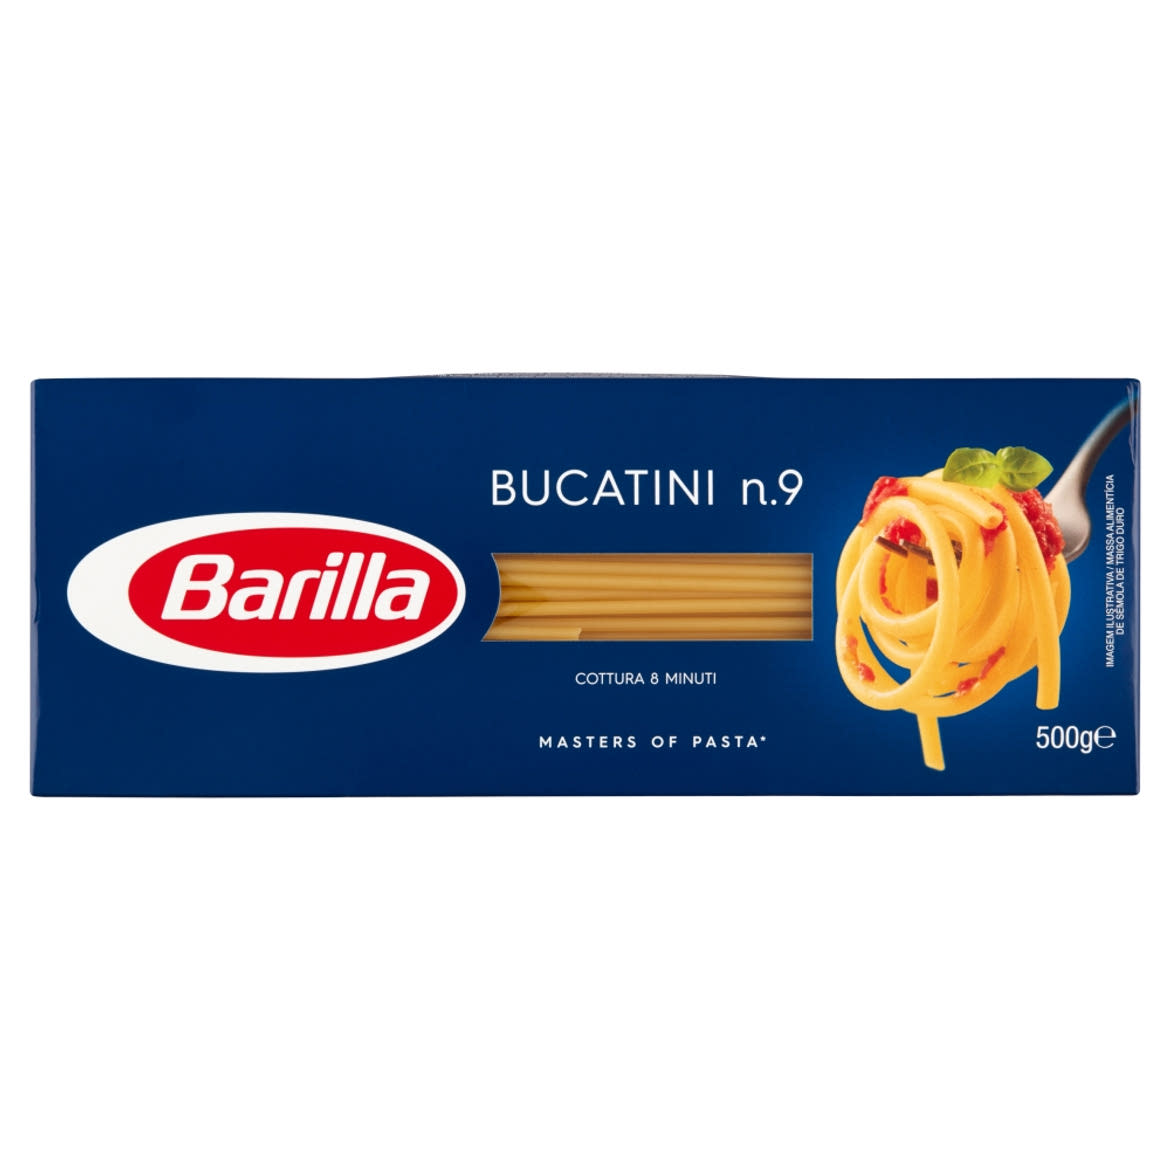 Barilla Bucatini szálas durum száraztészta